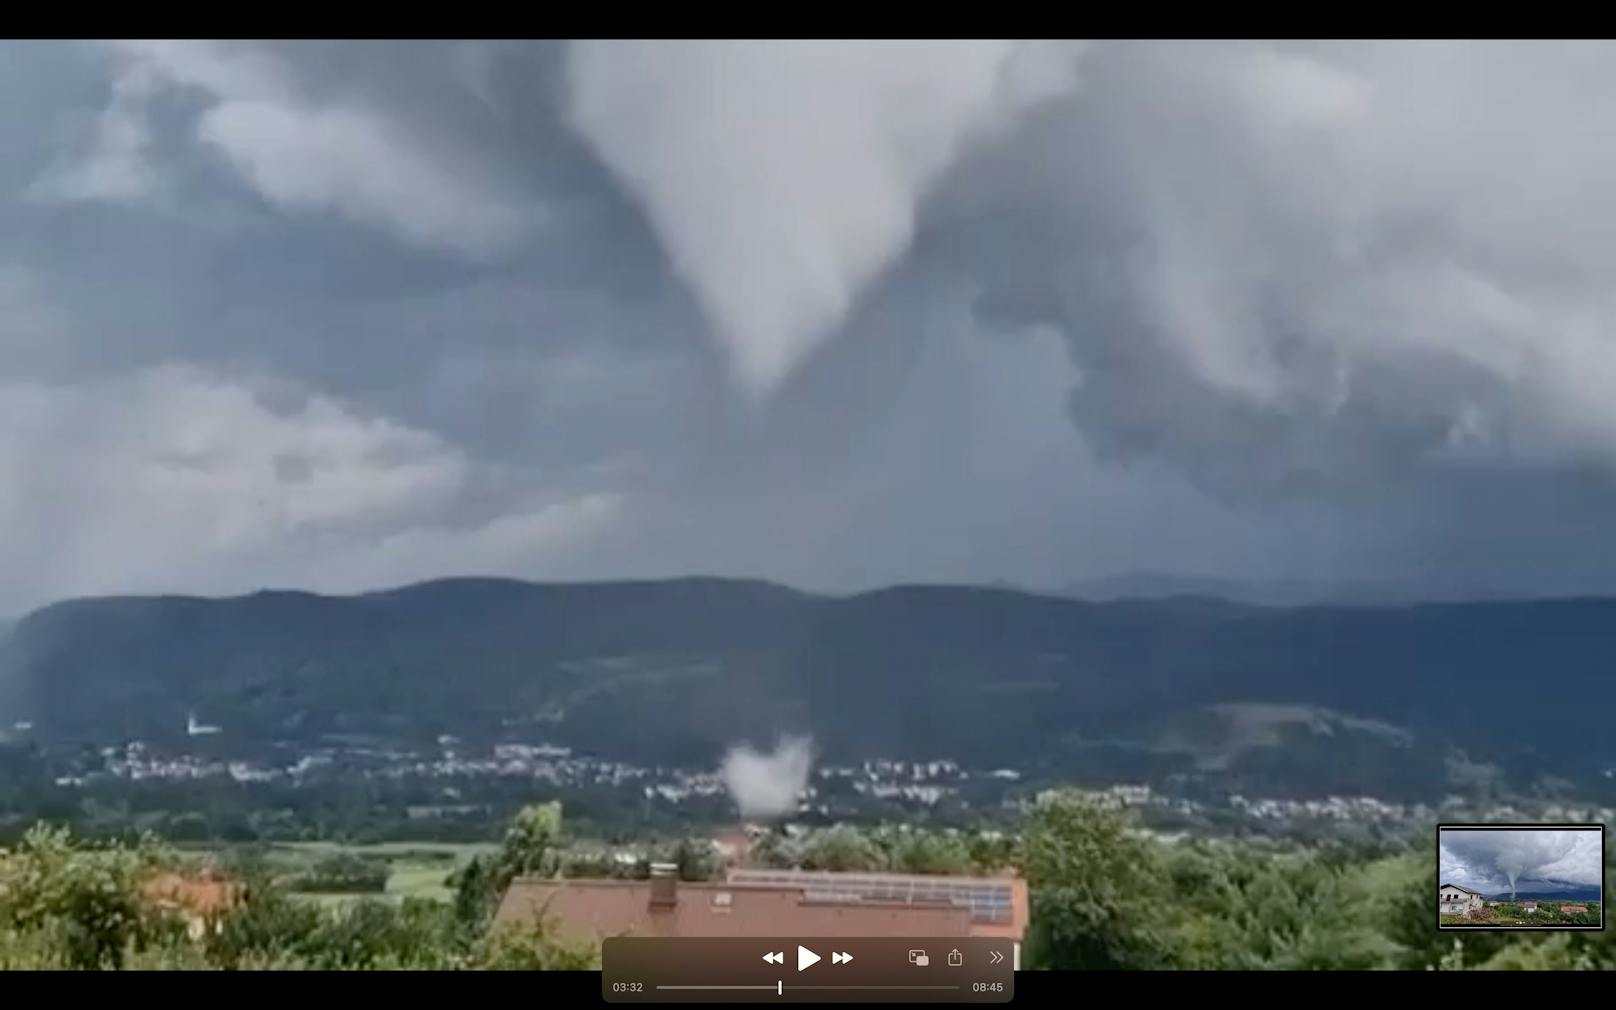 Alarm an der Adria! Nach den Unwettern mit Großhagel gab es am Dienstag Tornadoalarm. Ein erster Tornado wurde am Nachmittag an der beliebten Urlaubsküste Jesolo gesichtet. Ein weiterer starker Tornado wurde von zahlreichen Menschen in Slowenien dokumentiert.